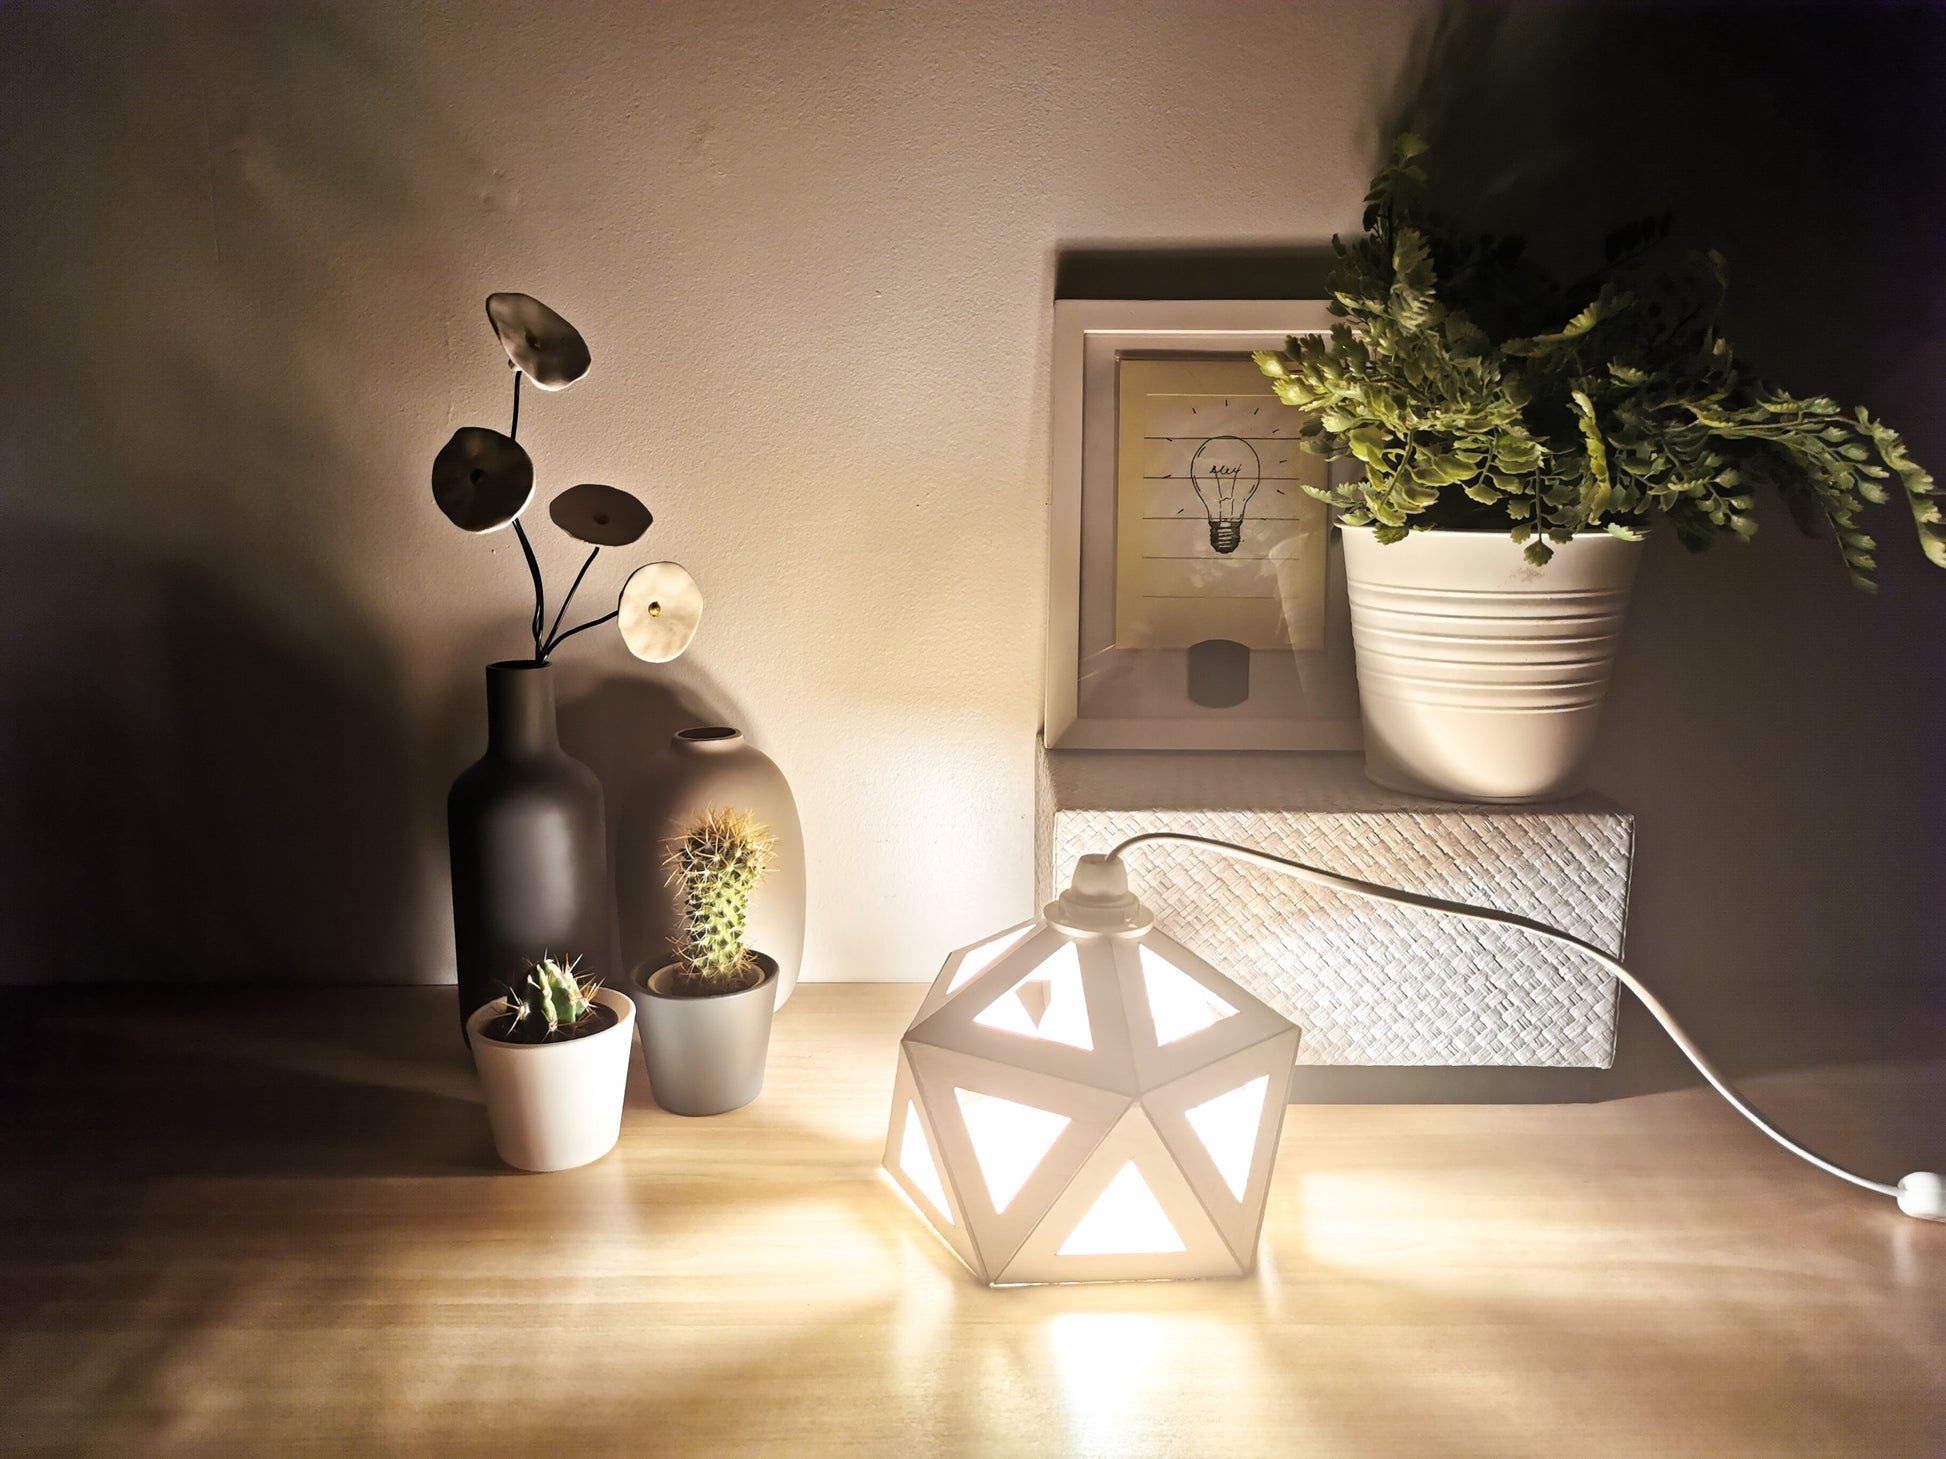 Une petite Lampe Blanche Design made in France de forme géométrique.